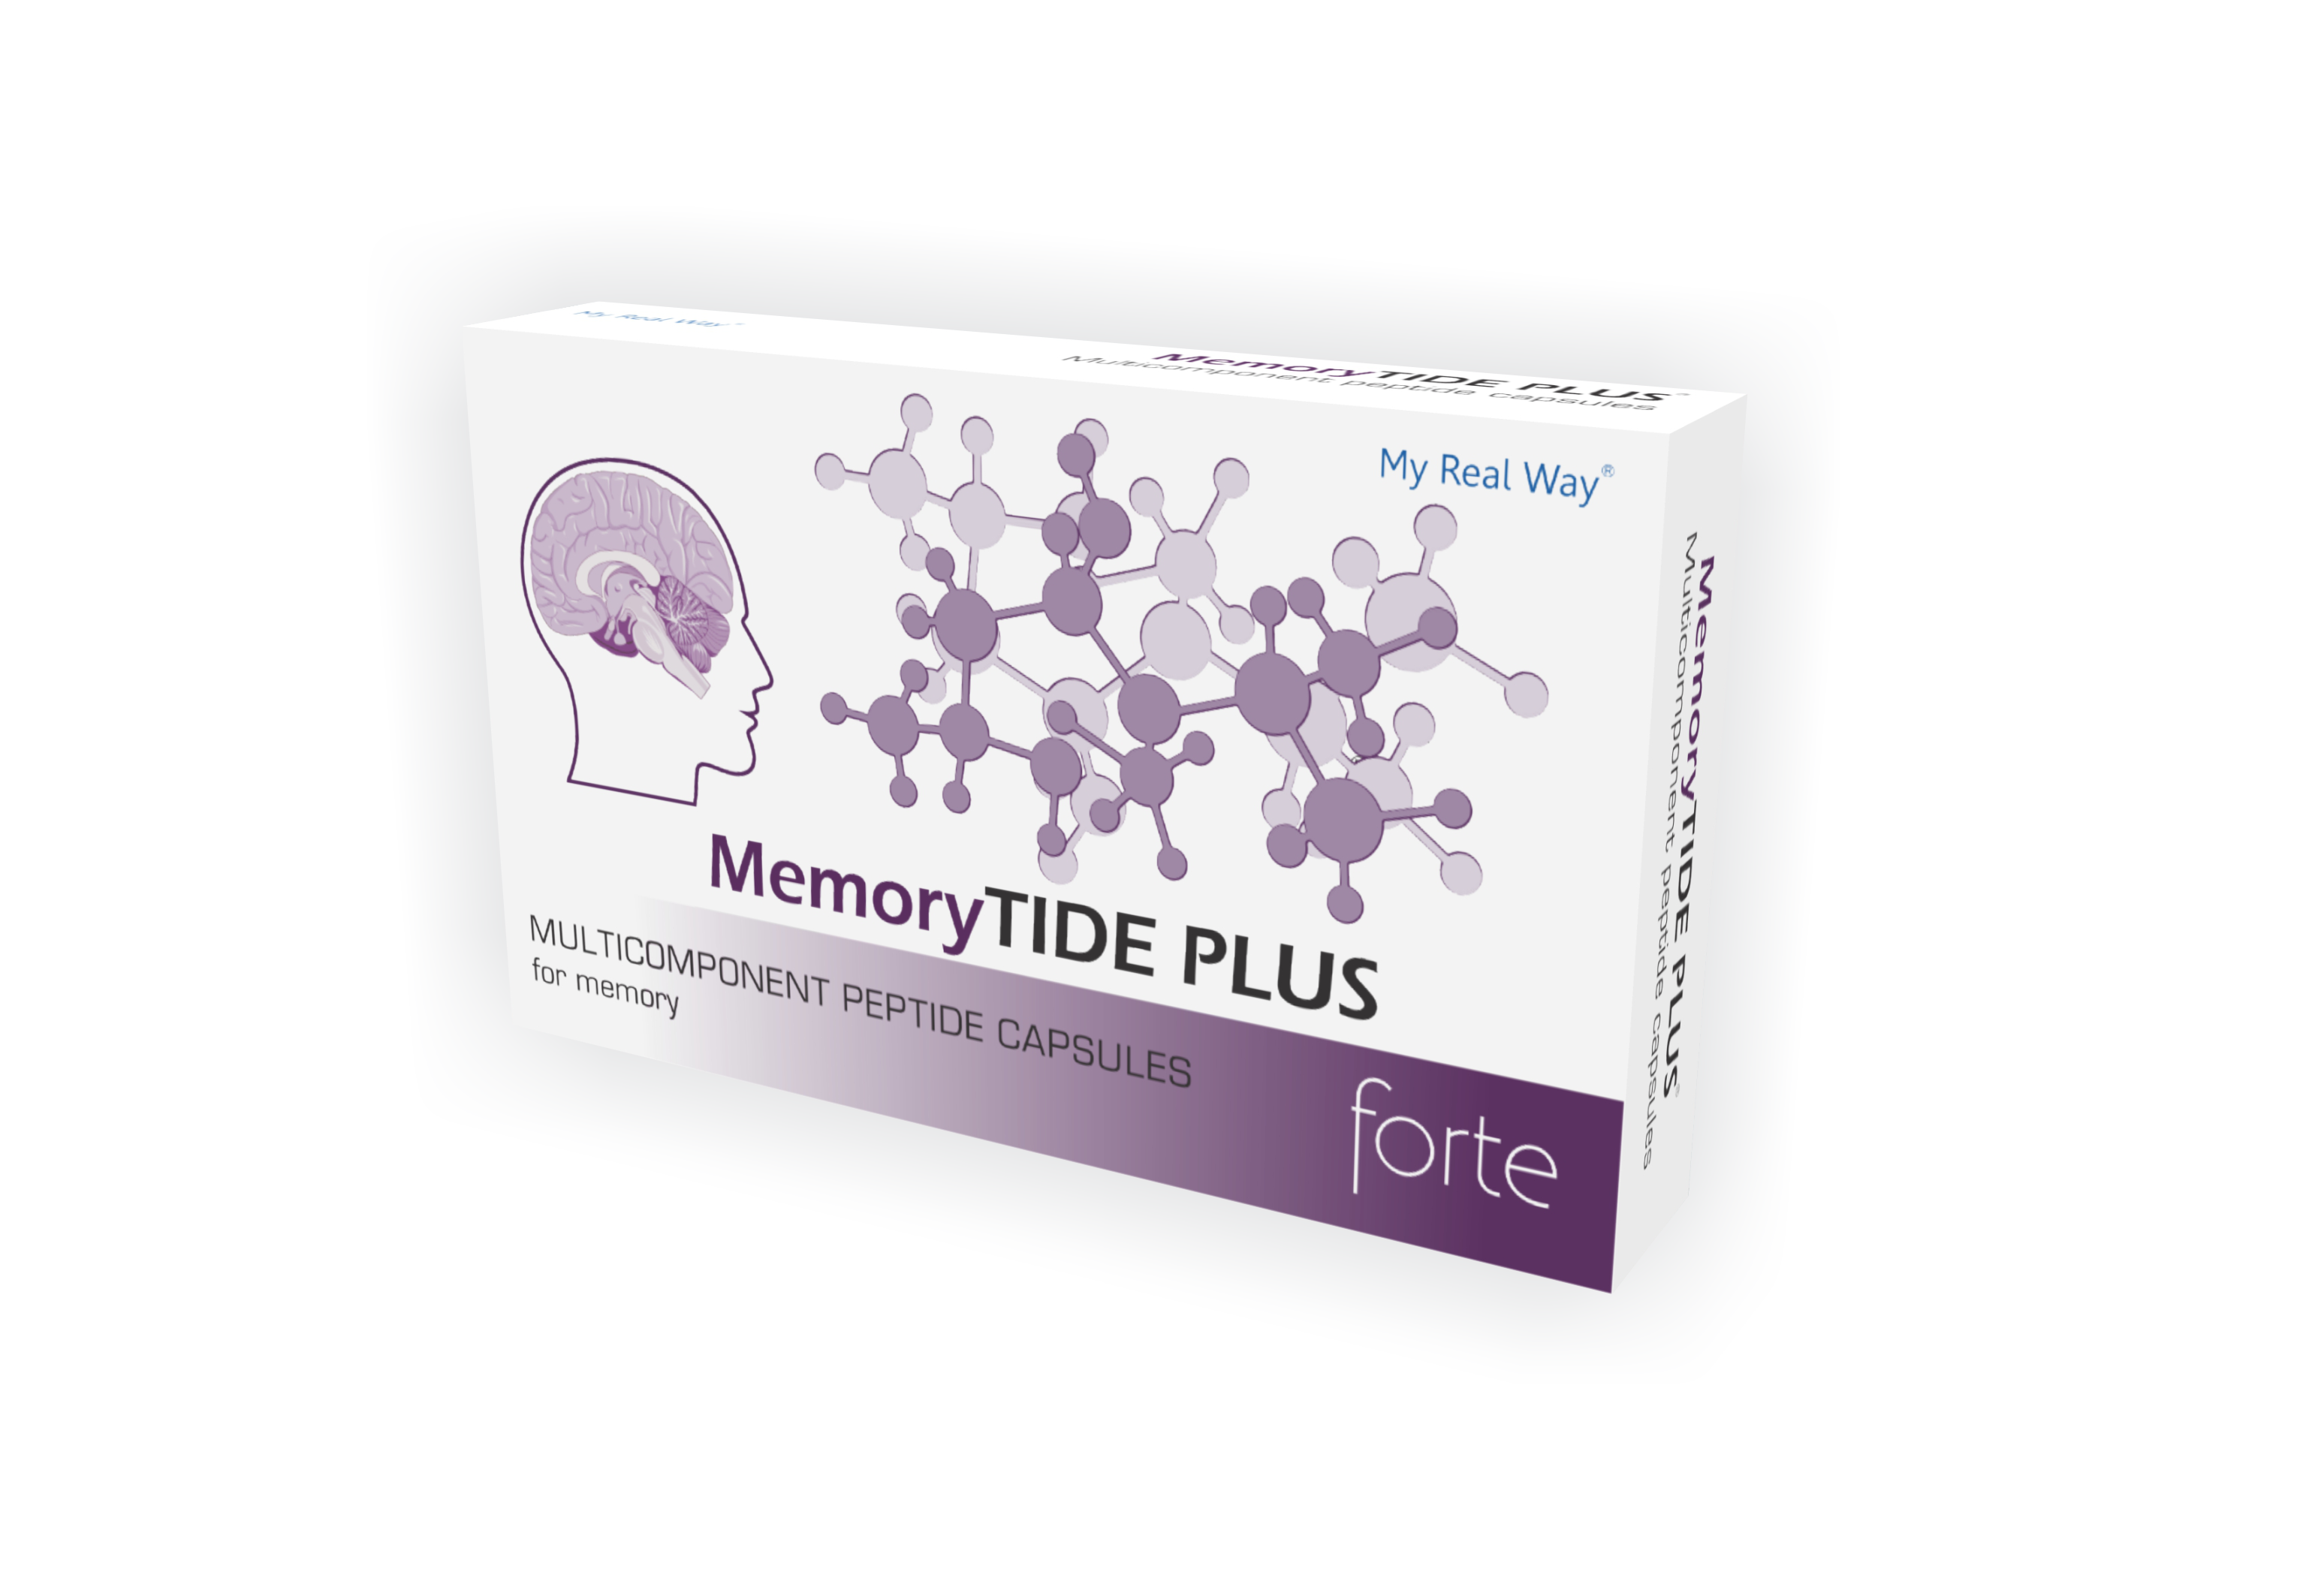 MemoryTIDE PLUS forte peptides for improving memory